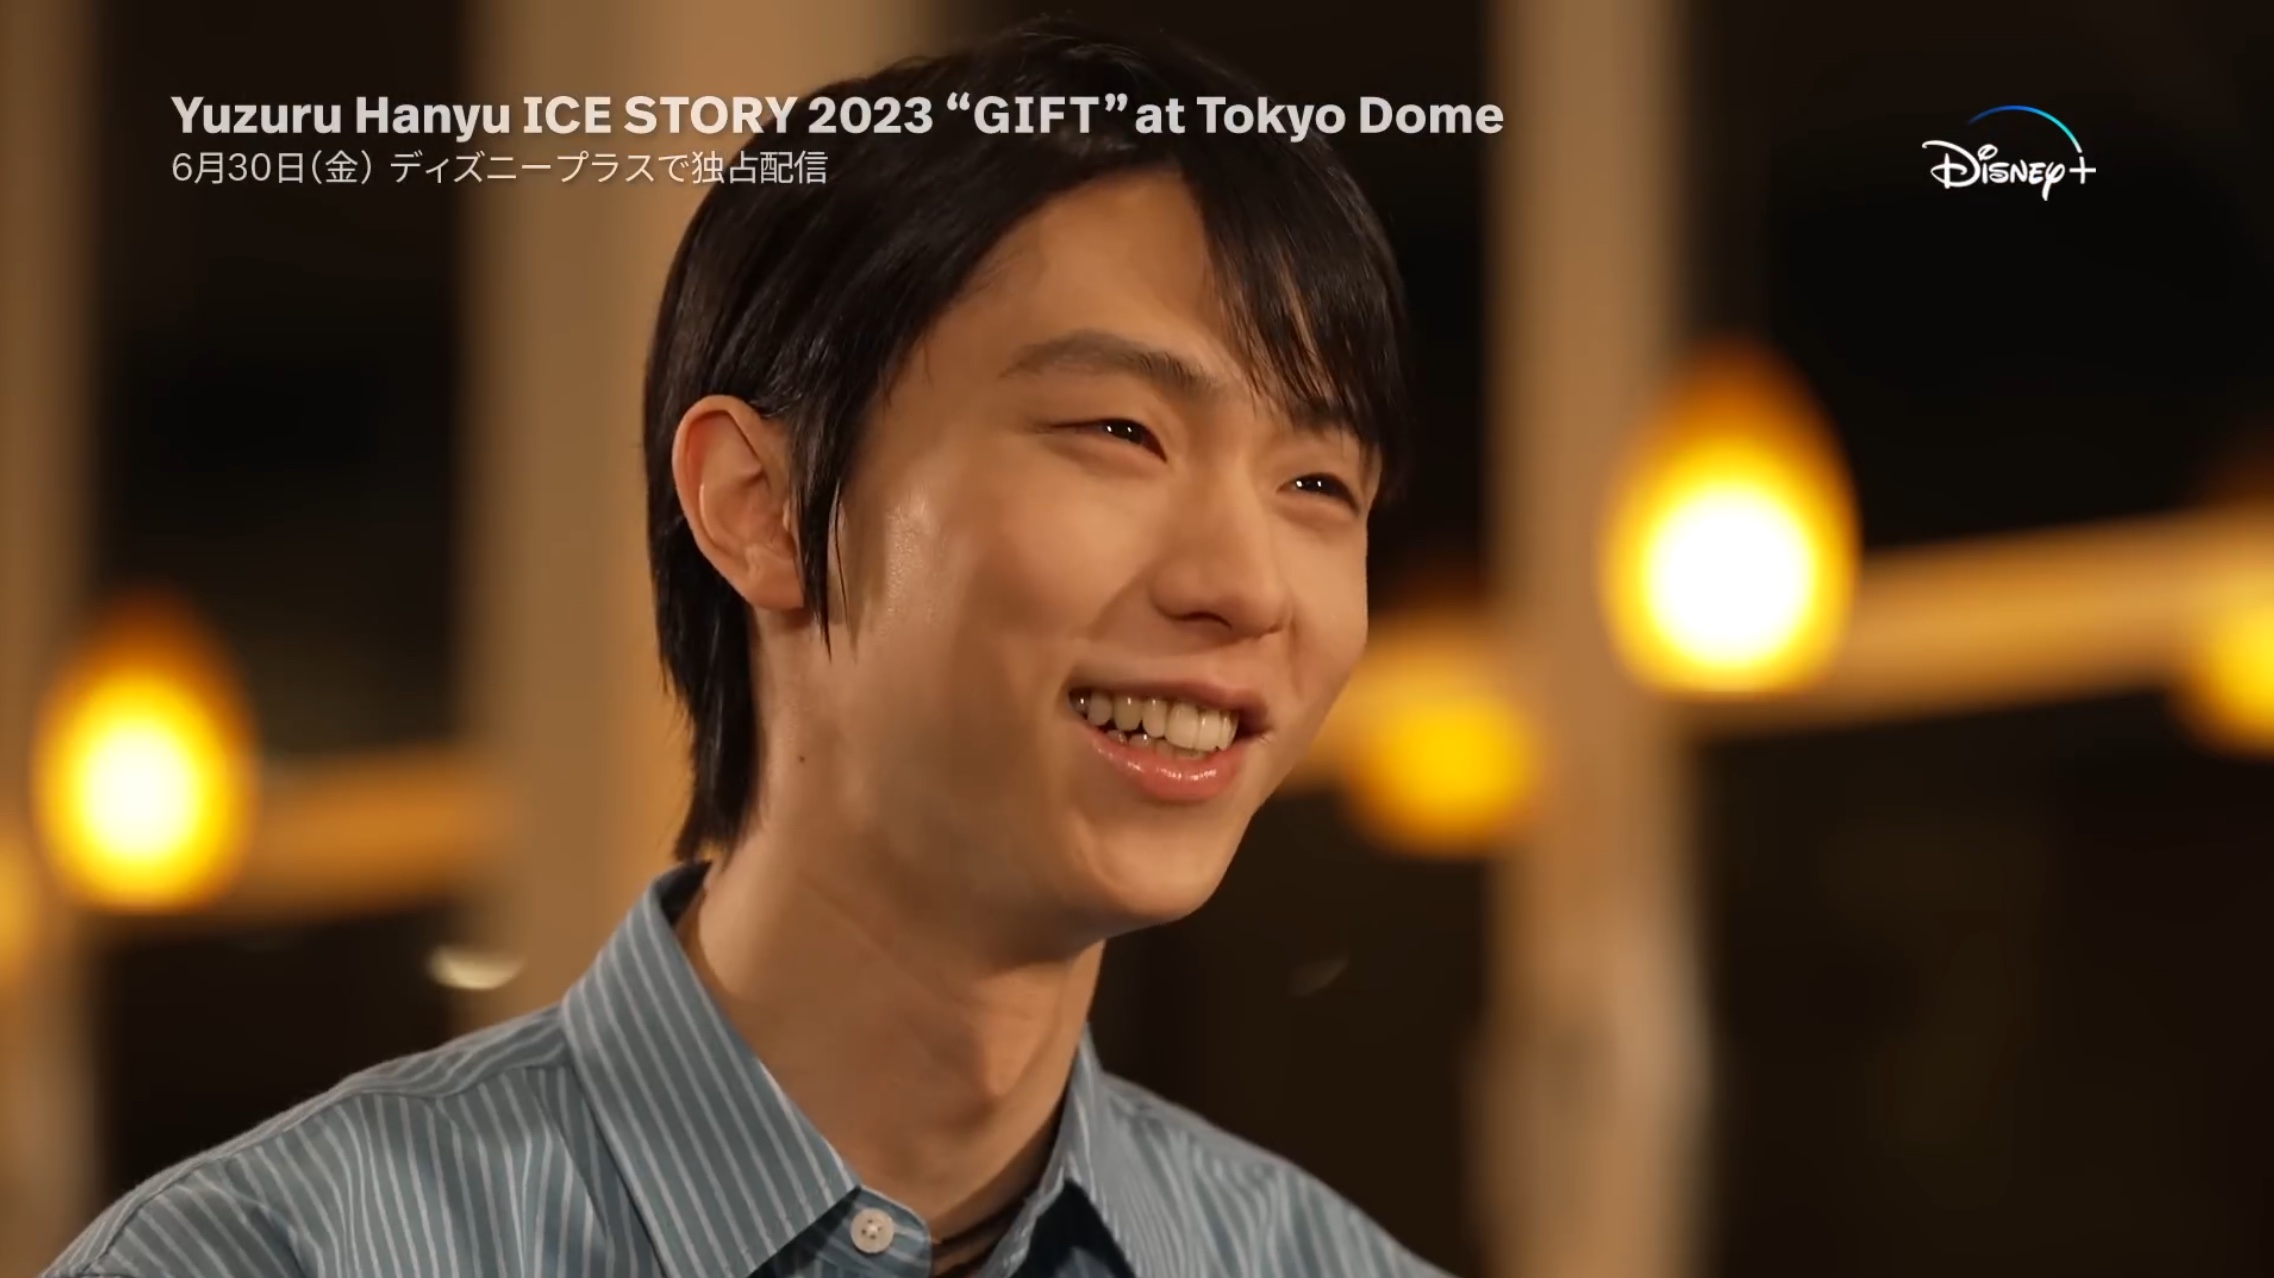 2時間後に配信開始！羽生結弦の単独公演「Yuzuru Hanyu ICE STORY 2023 “GIFT” at Tokyo Dome」特別版、Disney+で独占配信